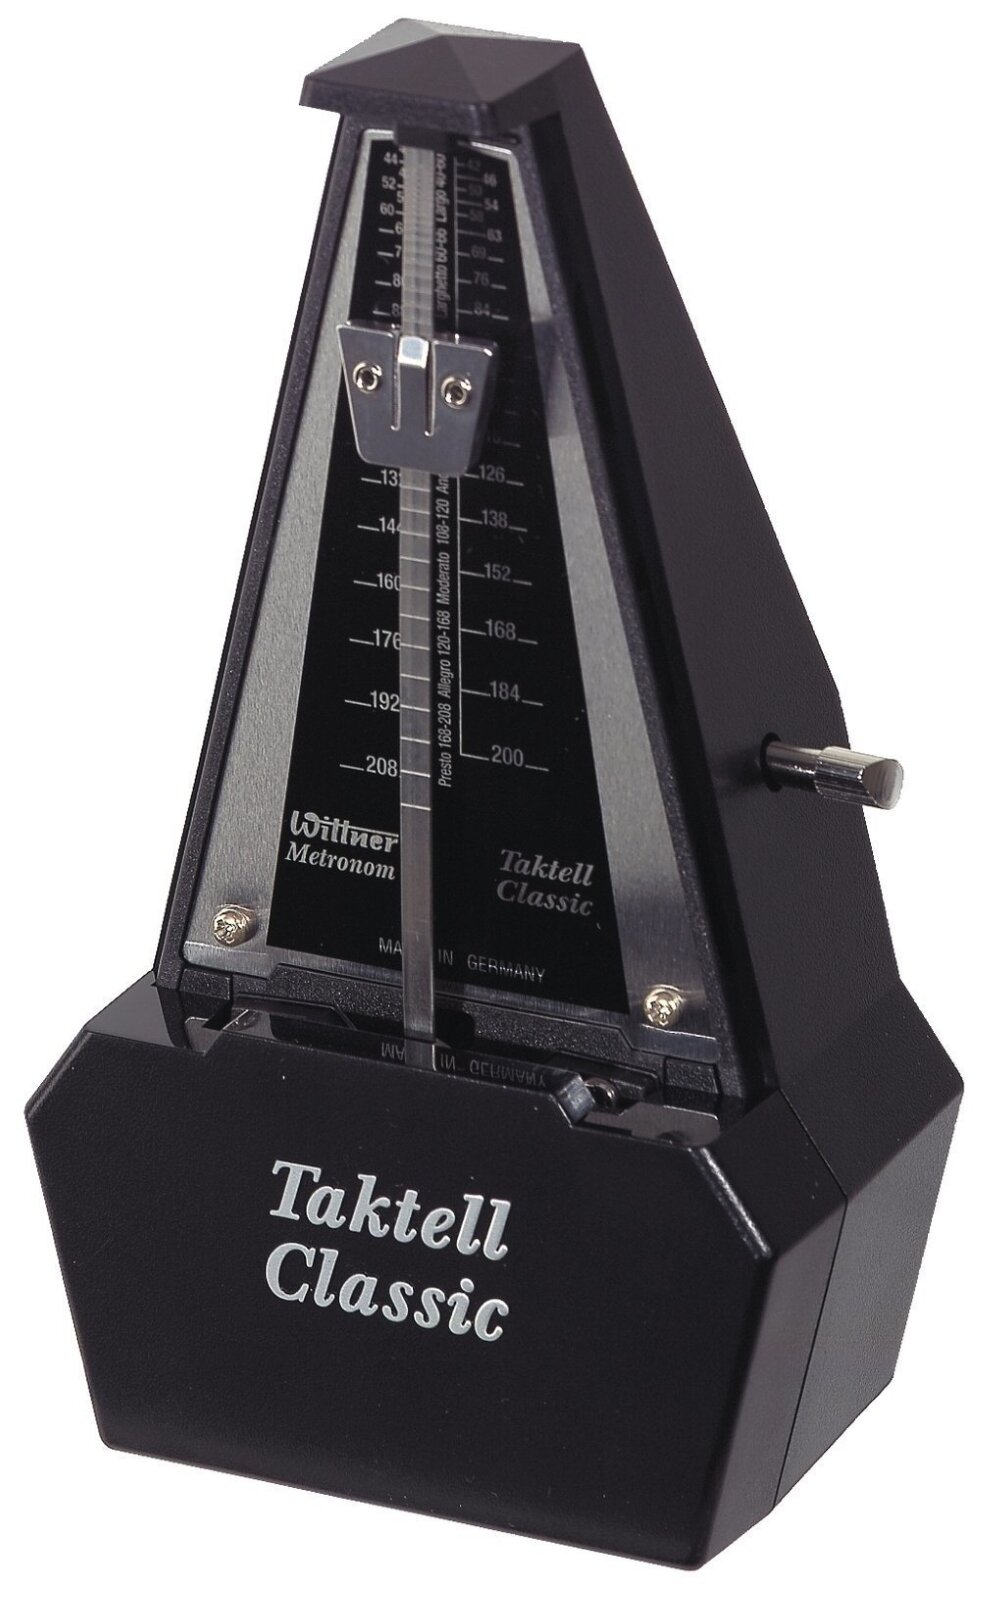 Wittner Taktell Classic black silver : photo 1